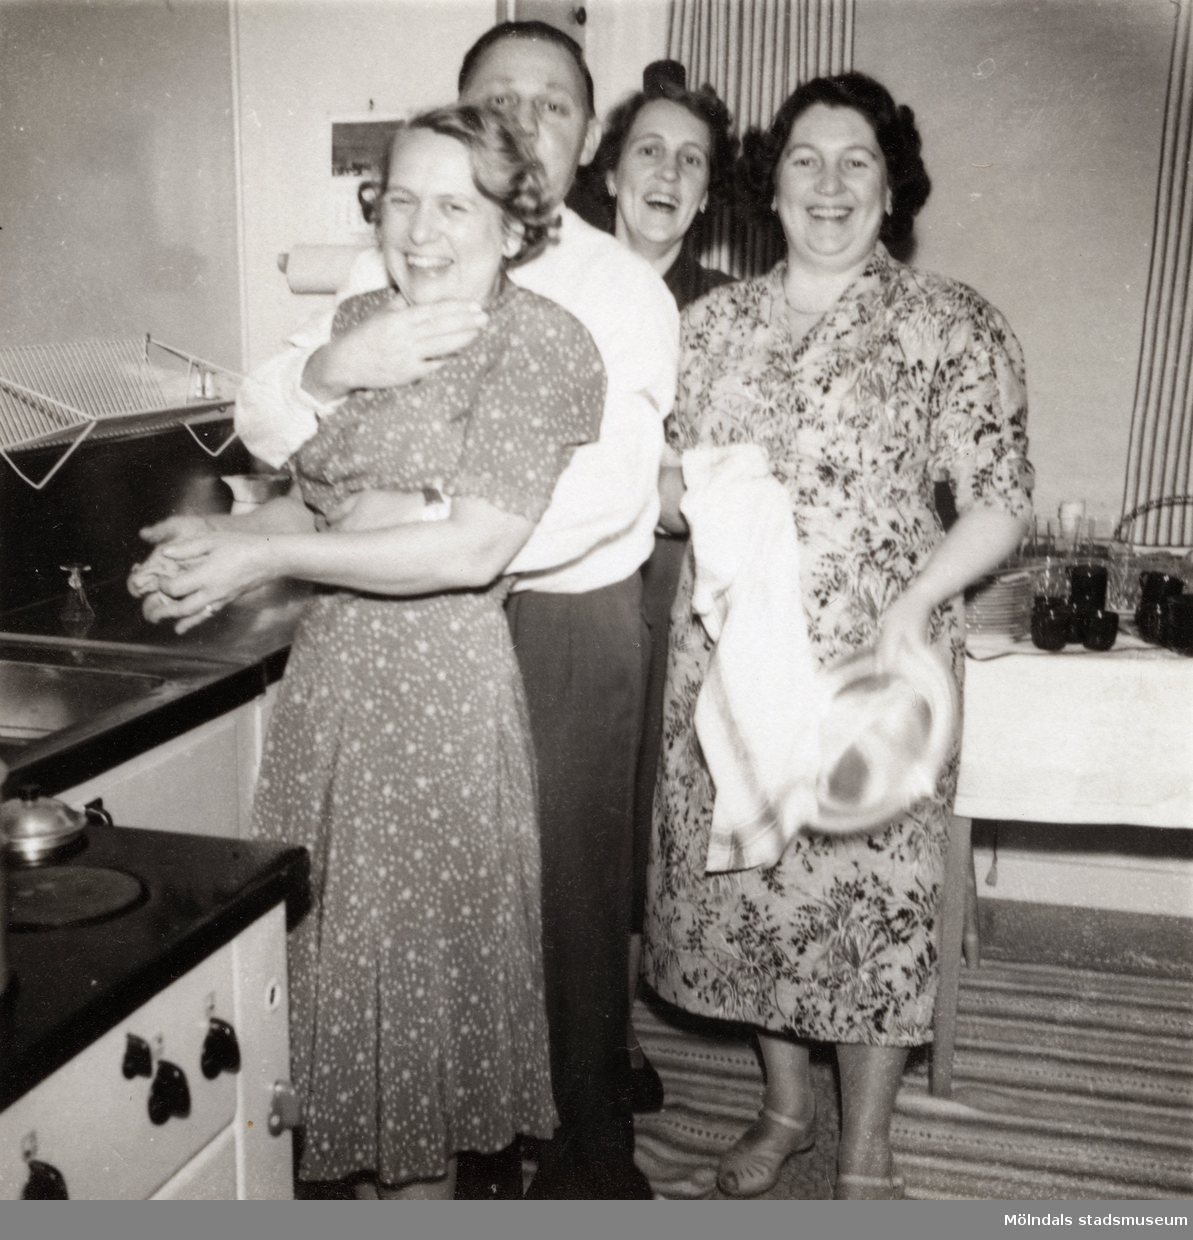 Köket på Solhemsgatan 10 efter 1948. Inga-Lill och Åke Börjesson tillsammans med Inga-Lills systrar Maj-Britt och Linnéa.